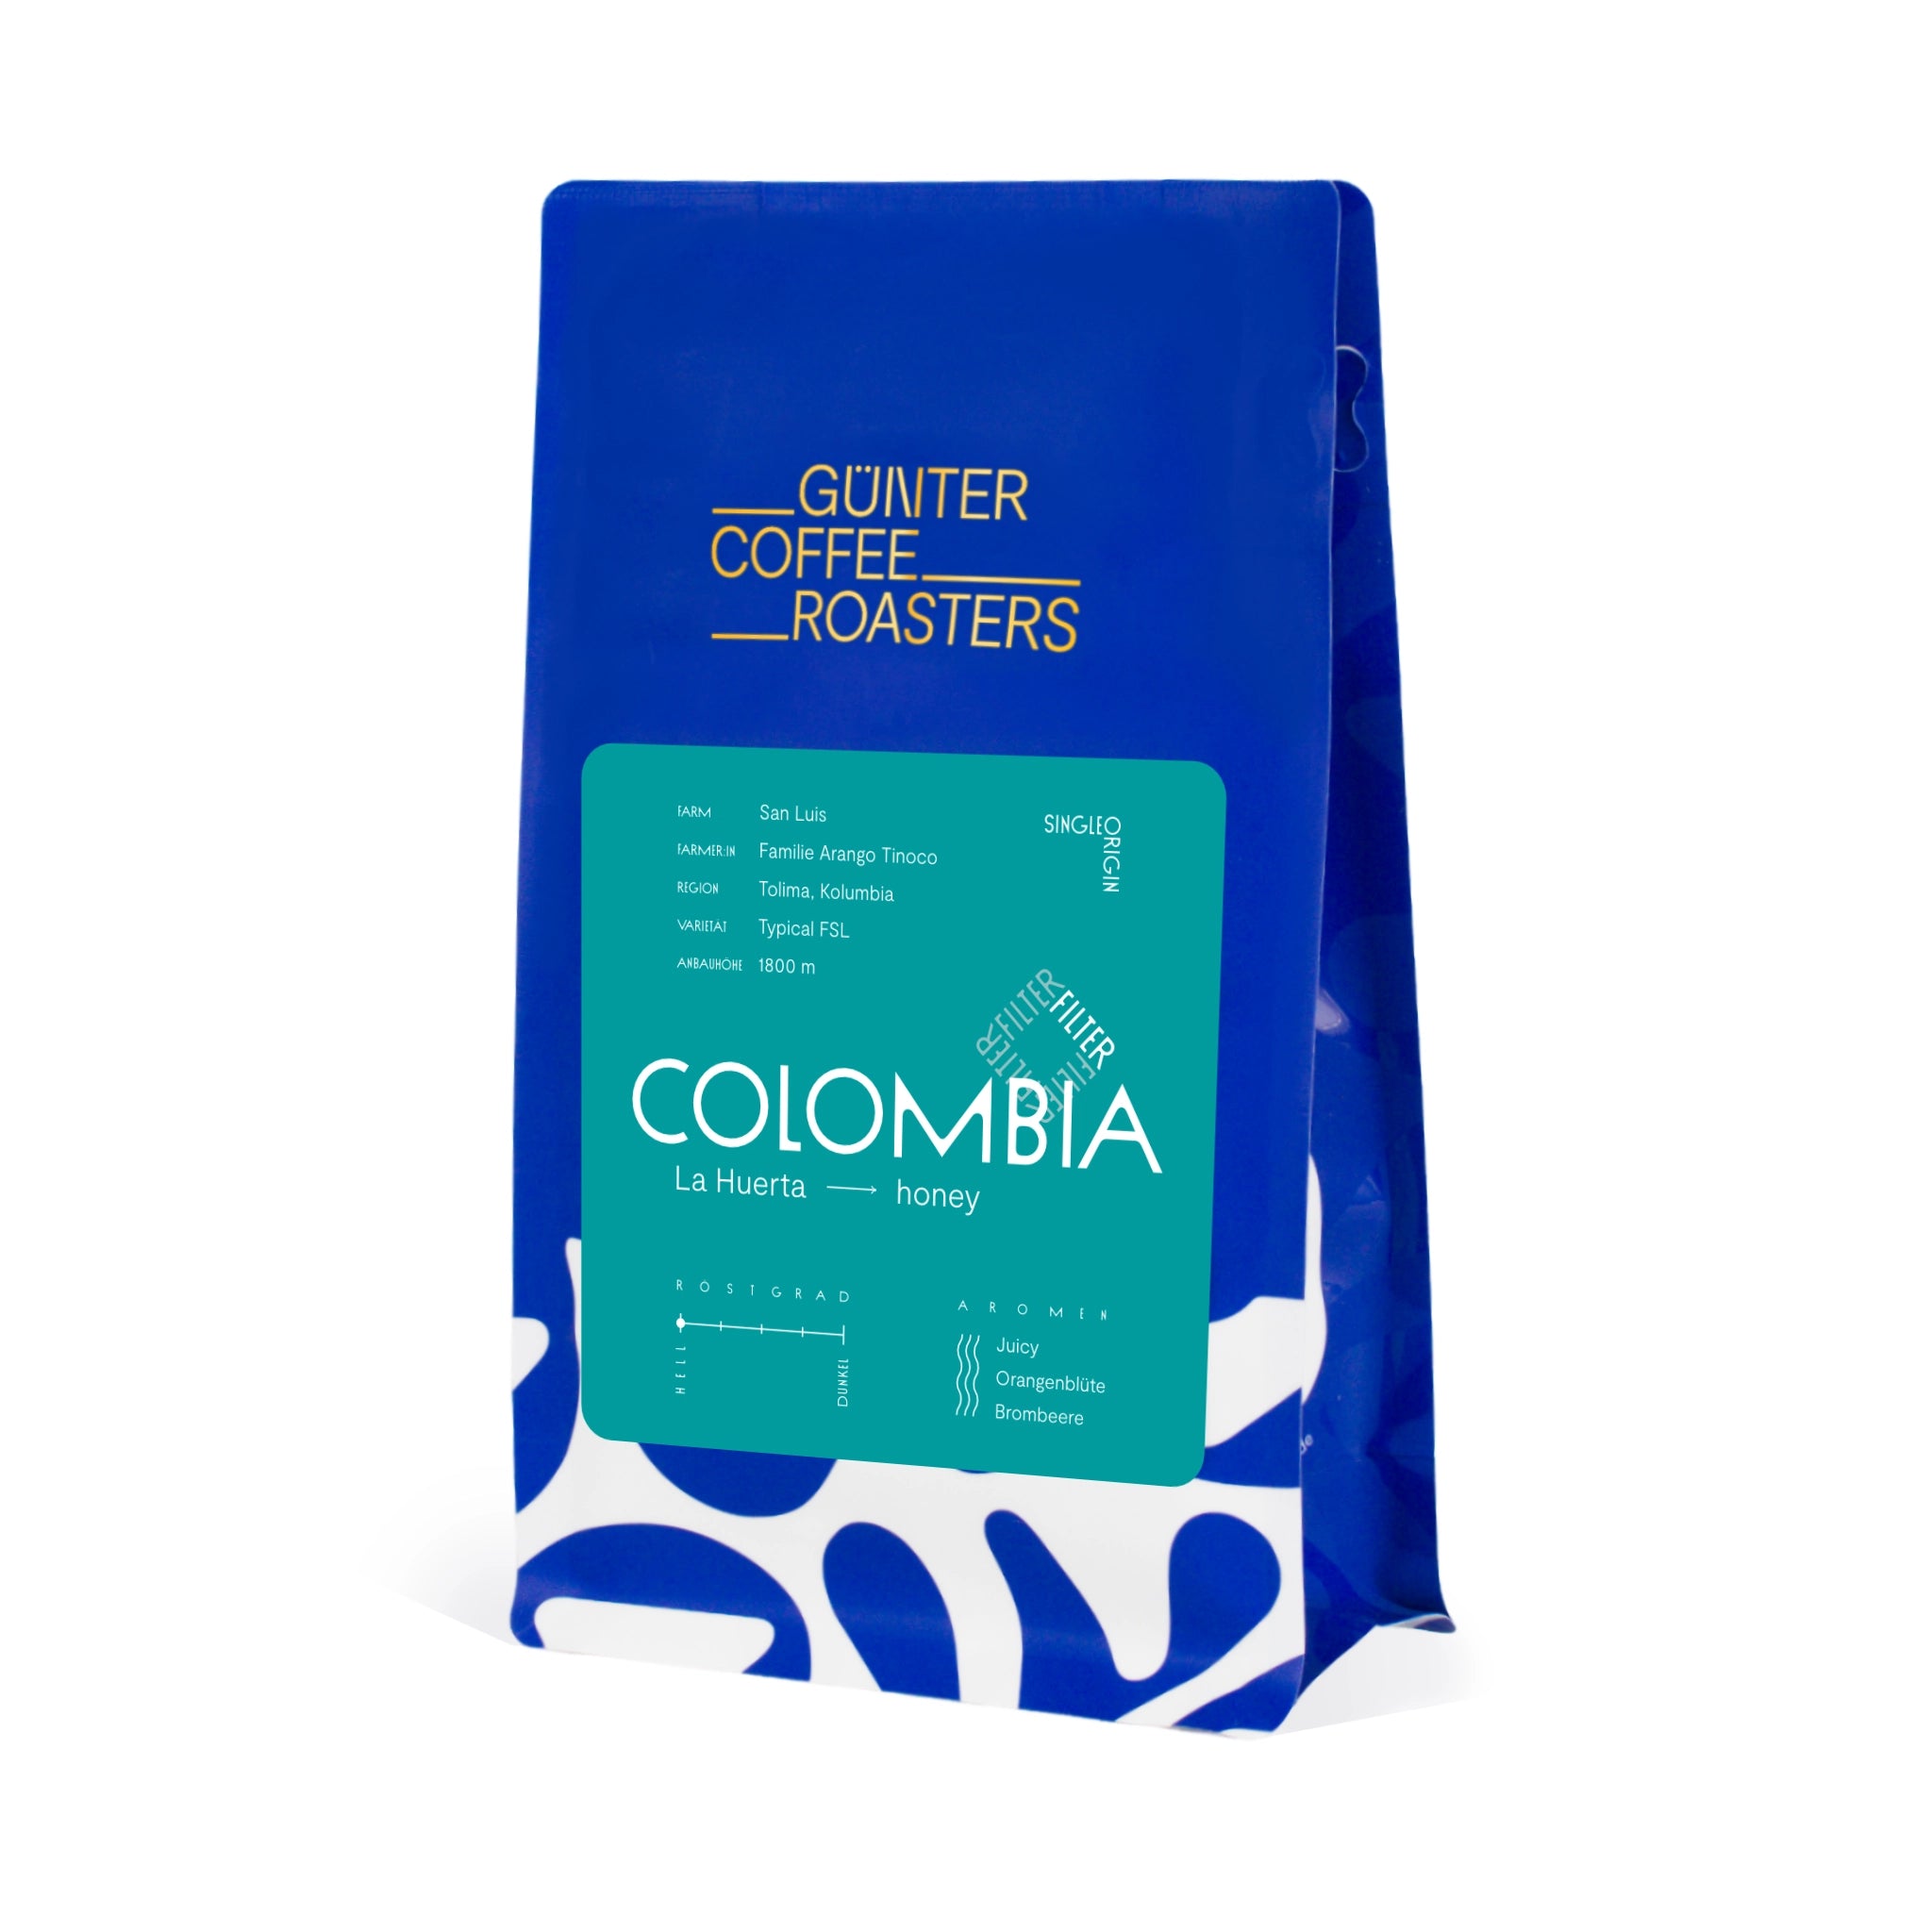 Produktverpackung Colombia La Huerta. Kaffeebohnen für Filterkaffee. Saftige Noten von Orangenblüte und Brombeere. Röstgrad 1 von 5. Sortenreine Arabica-Kaffeebohnen.